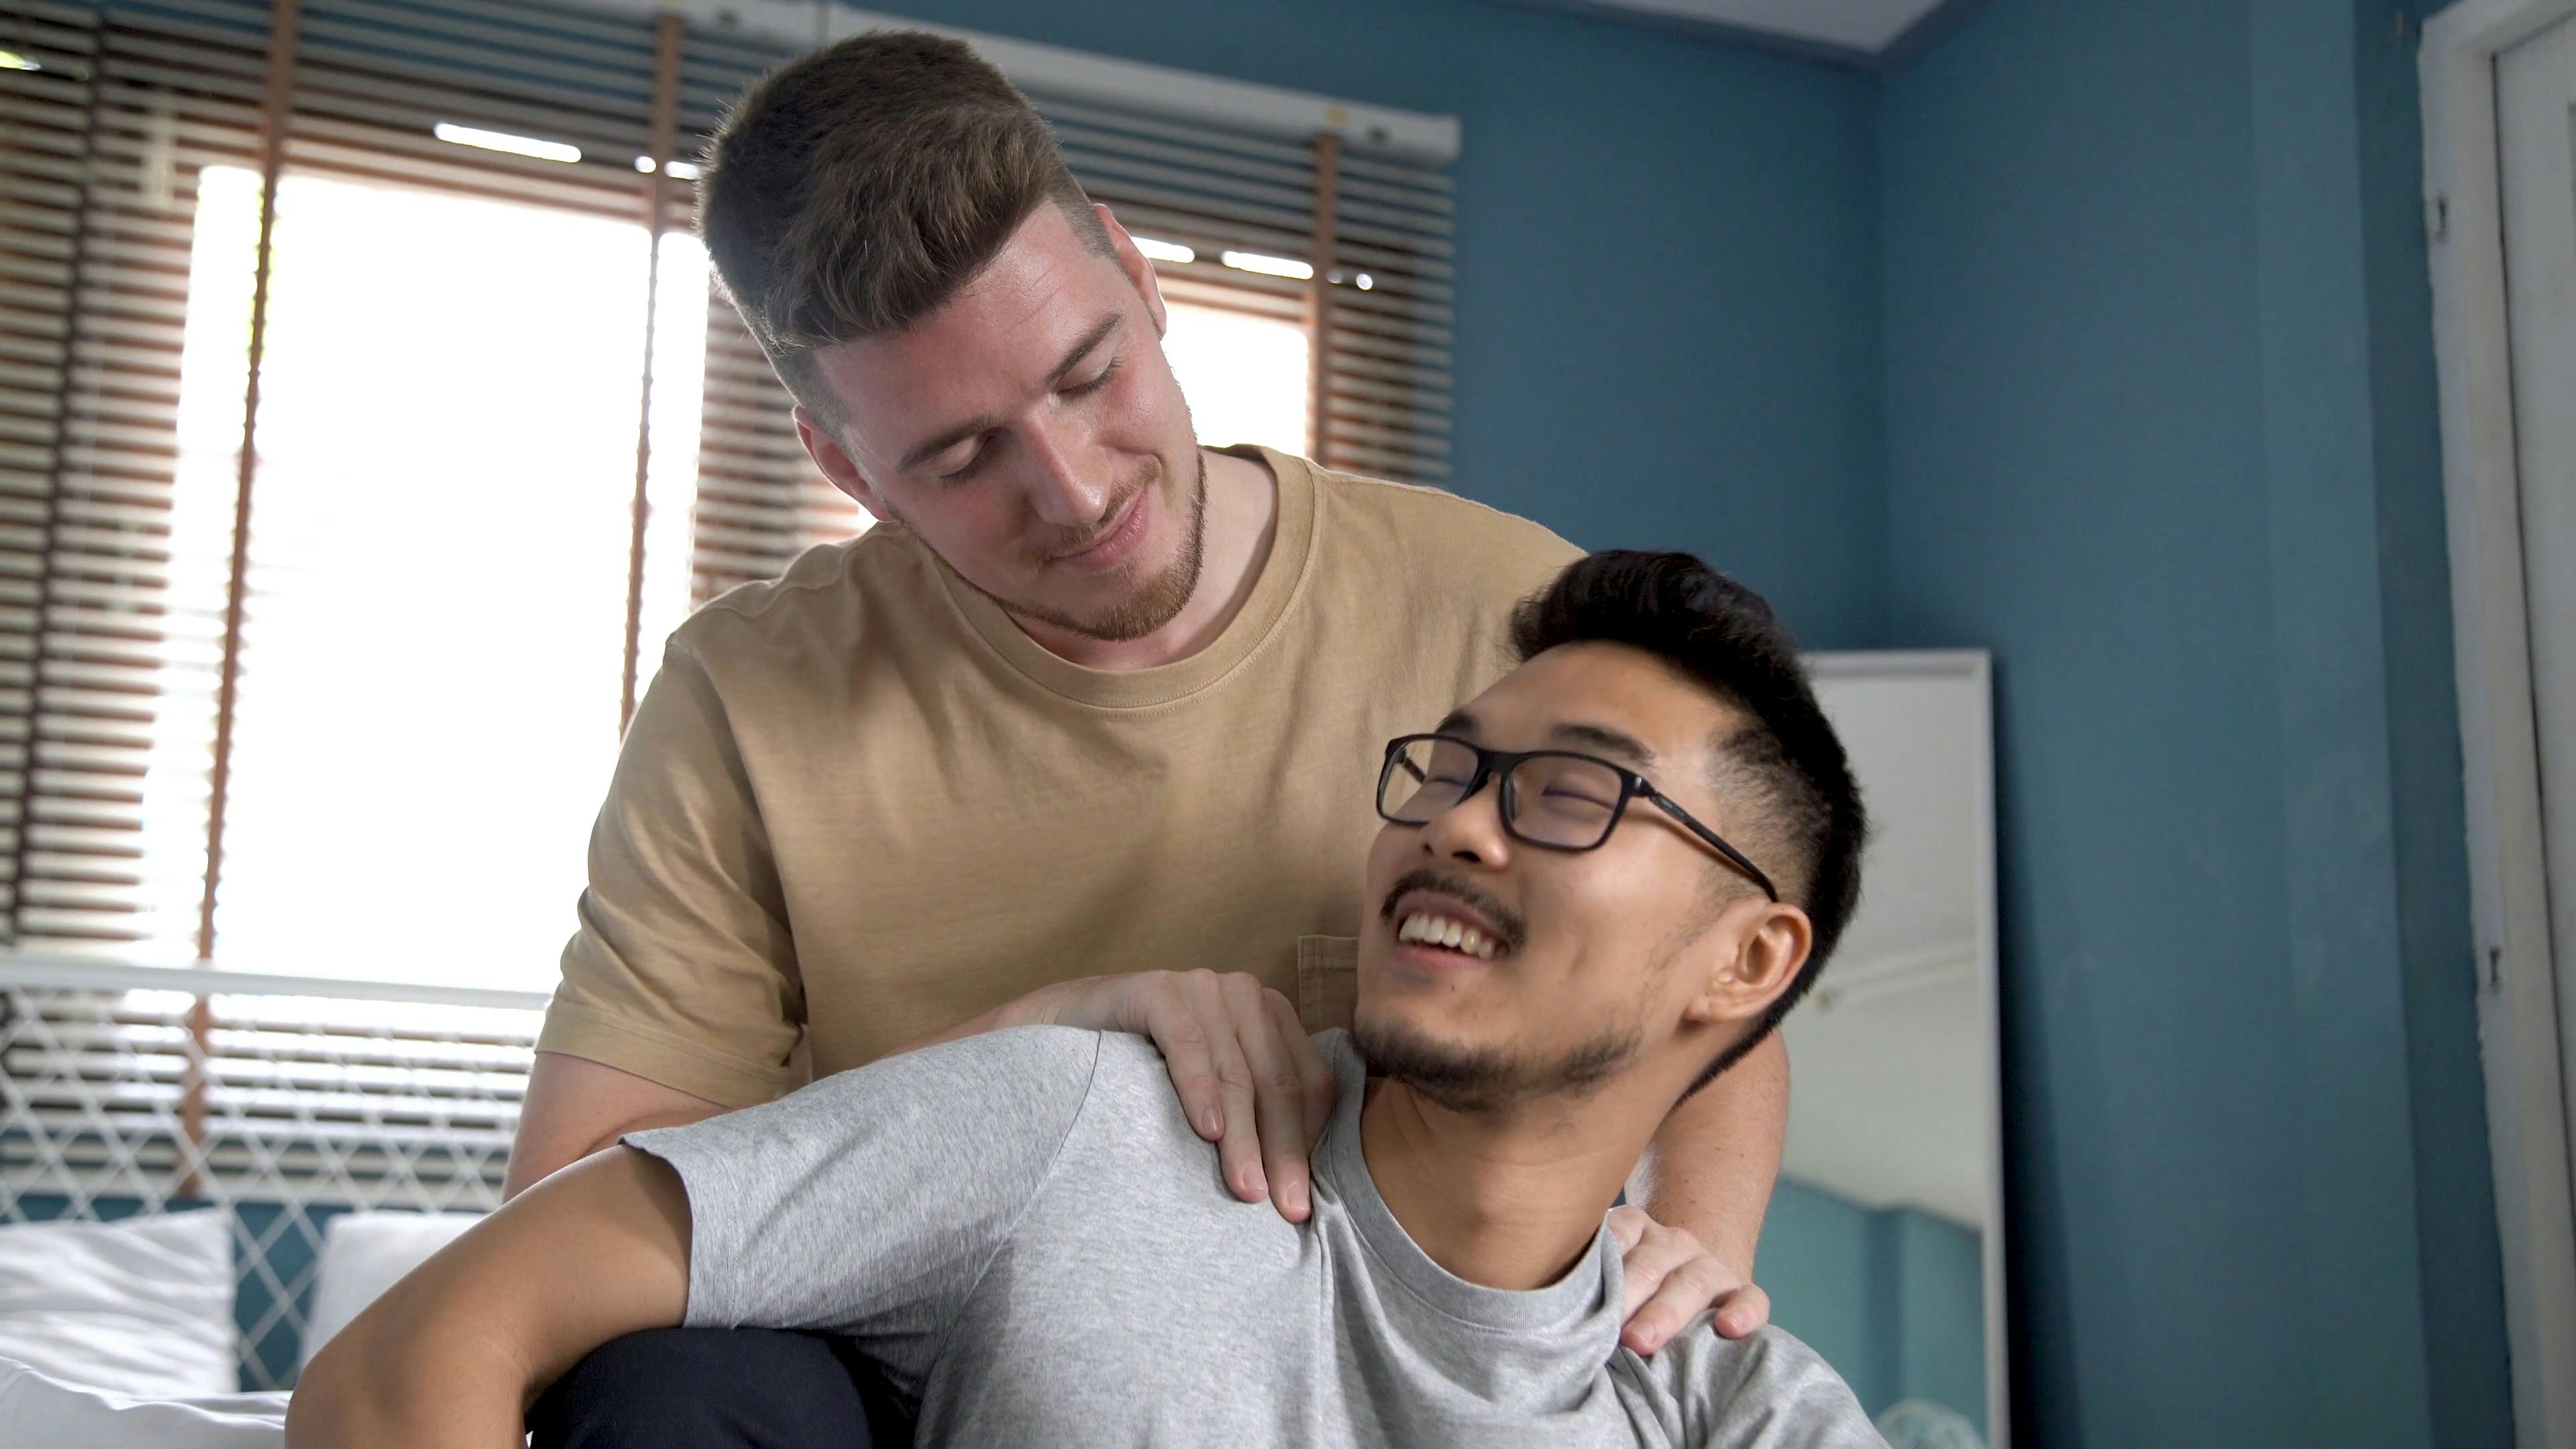 video of gay men massage